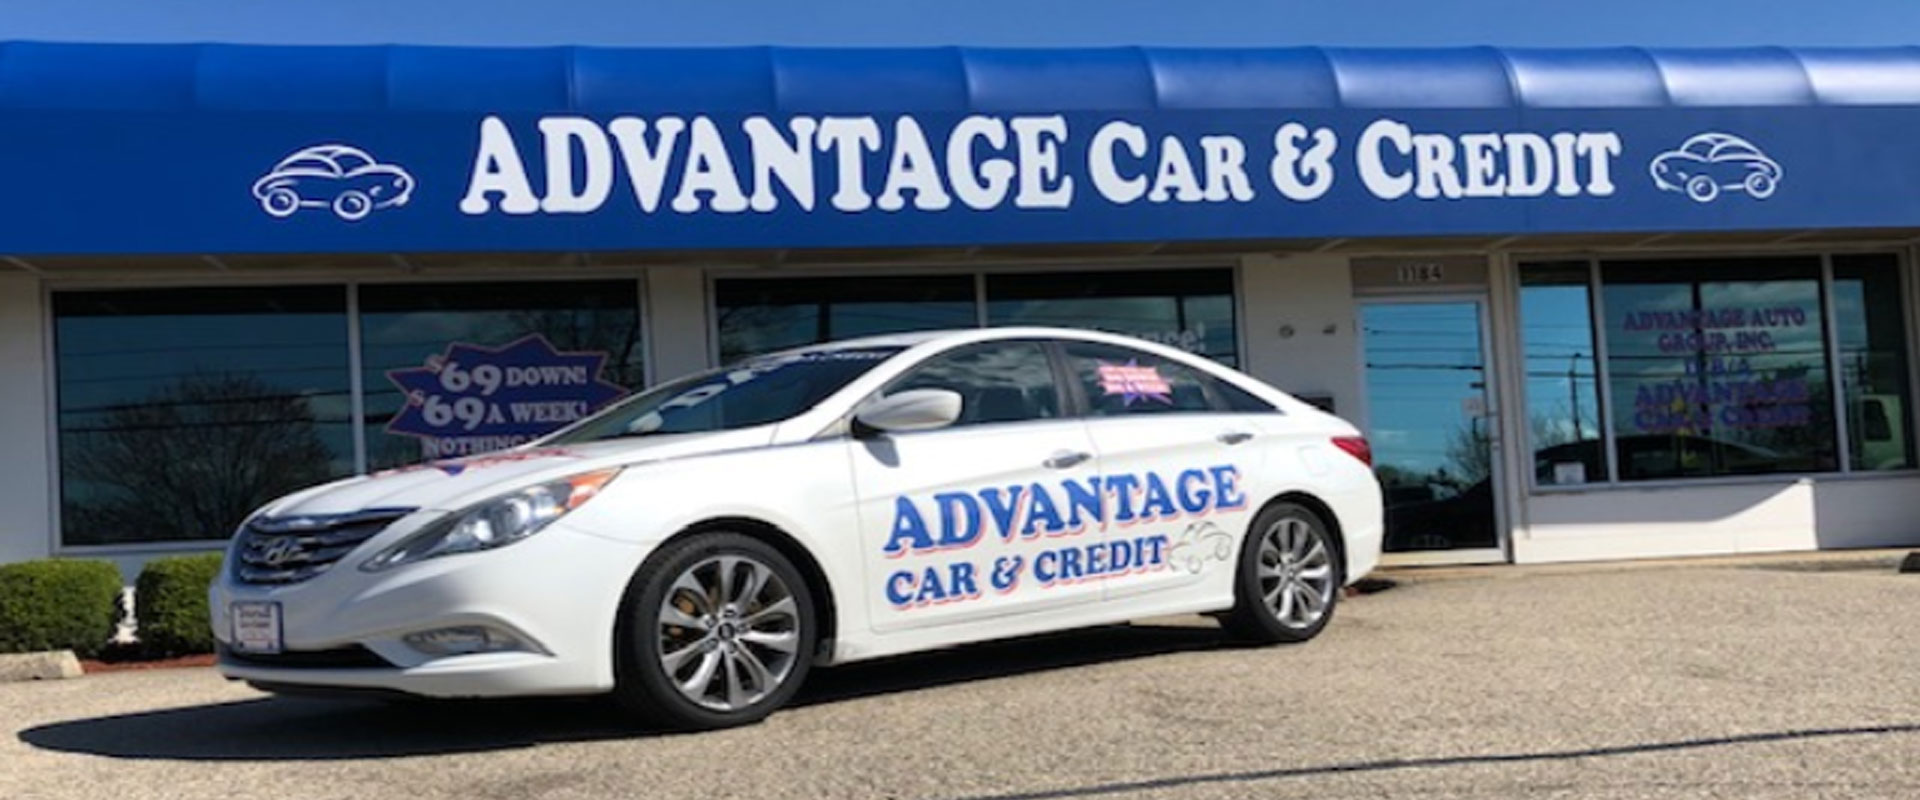 Advantage Car & Credit Xenia